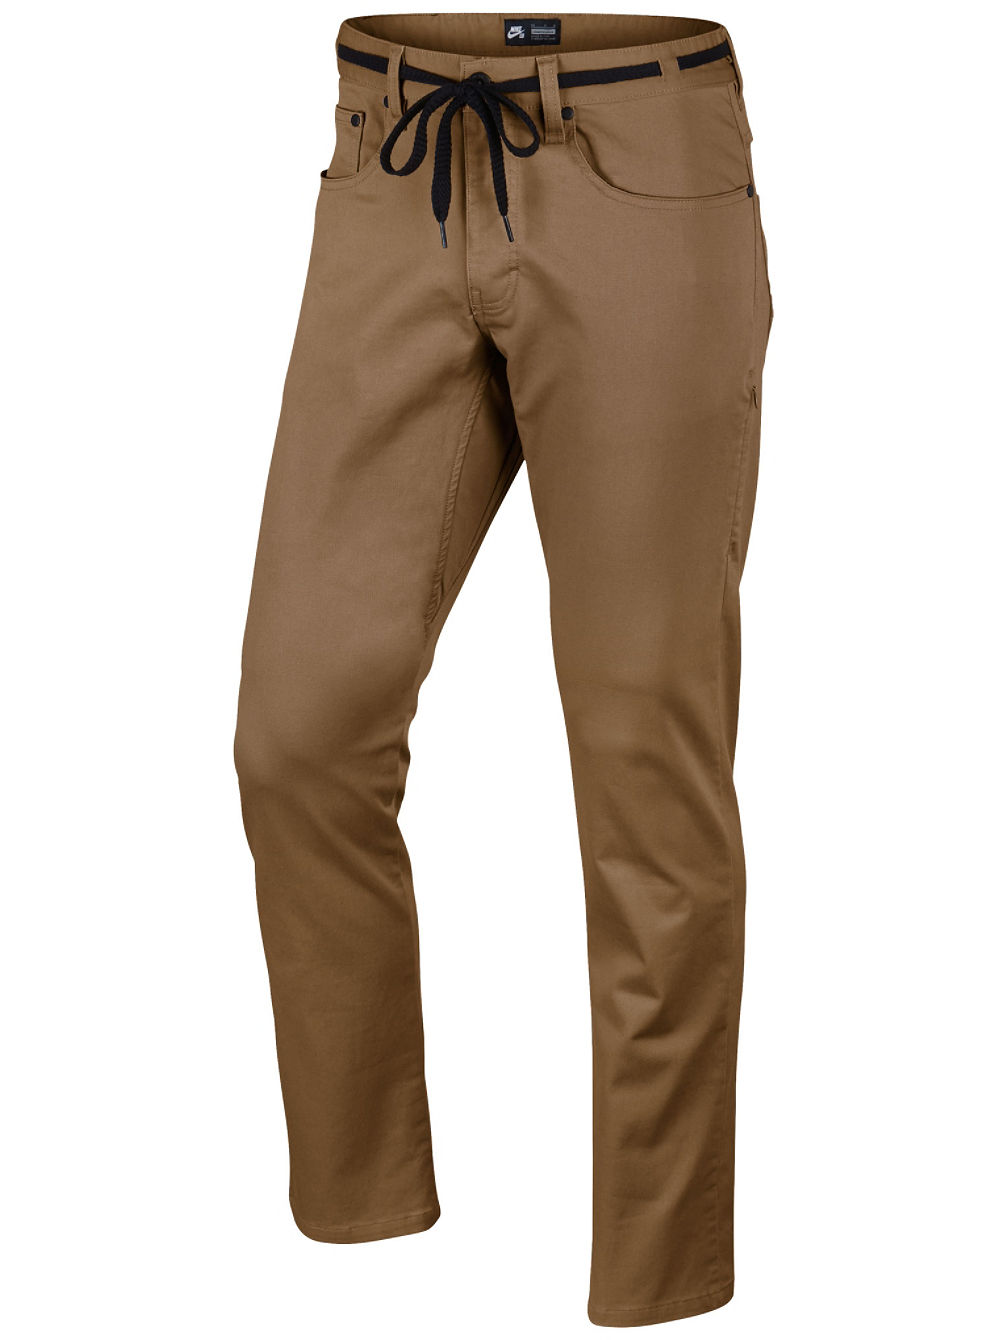 SB FTM 5 Pocket Pantaloni